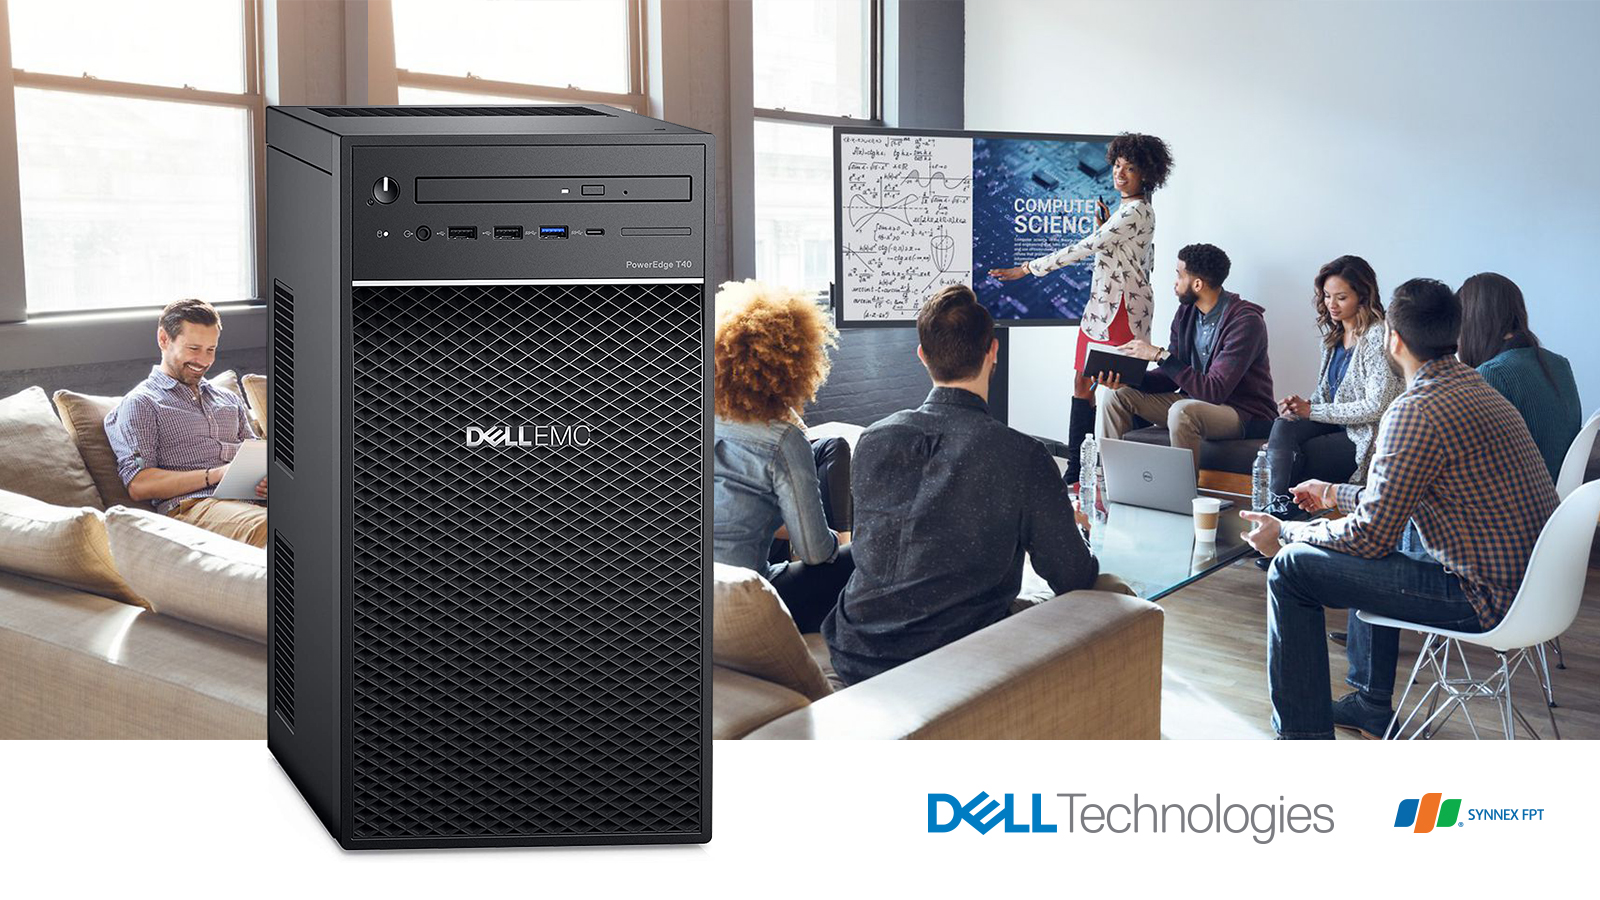 Dell PowerEdge T40 Tower Server - máy chủ giá rẻ cho doanh nghiệp vừa và nhỏ